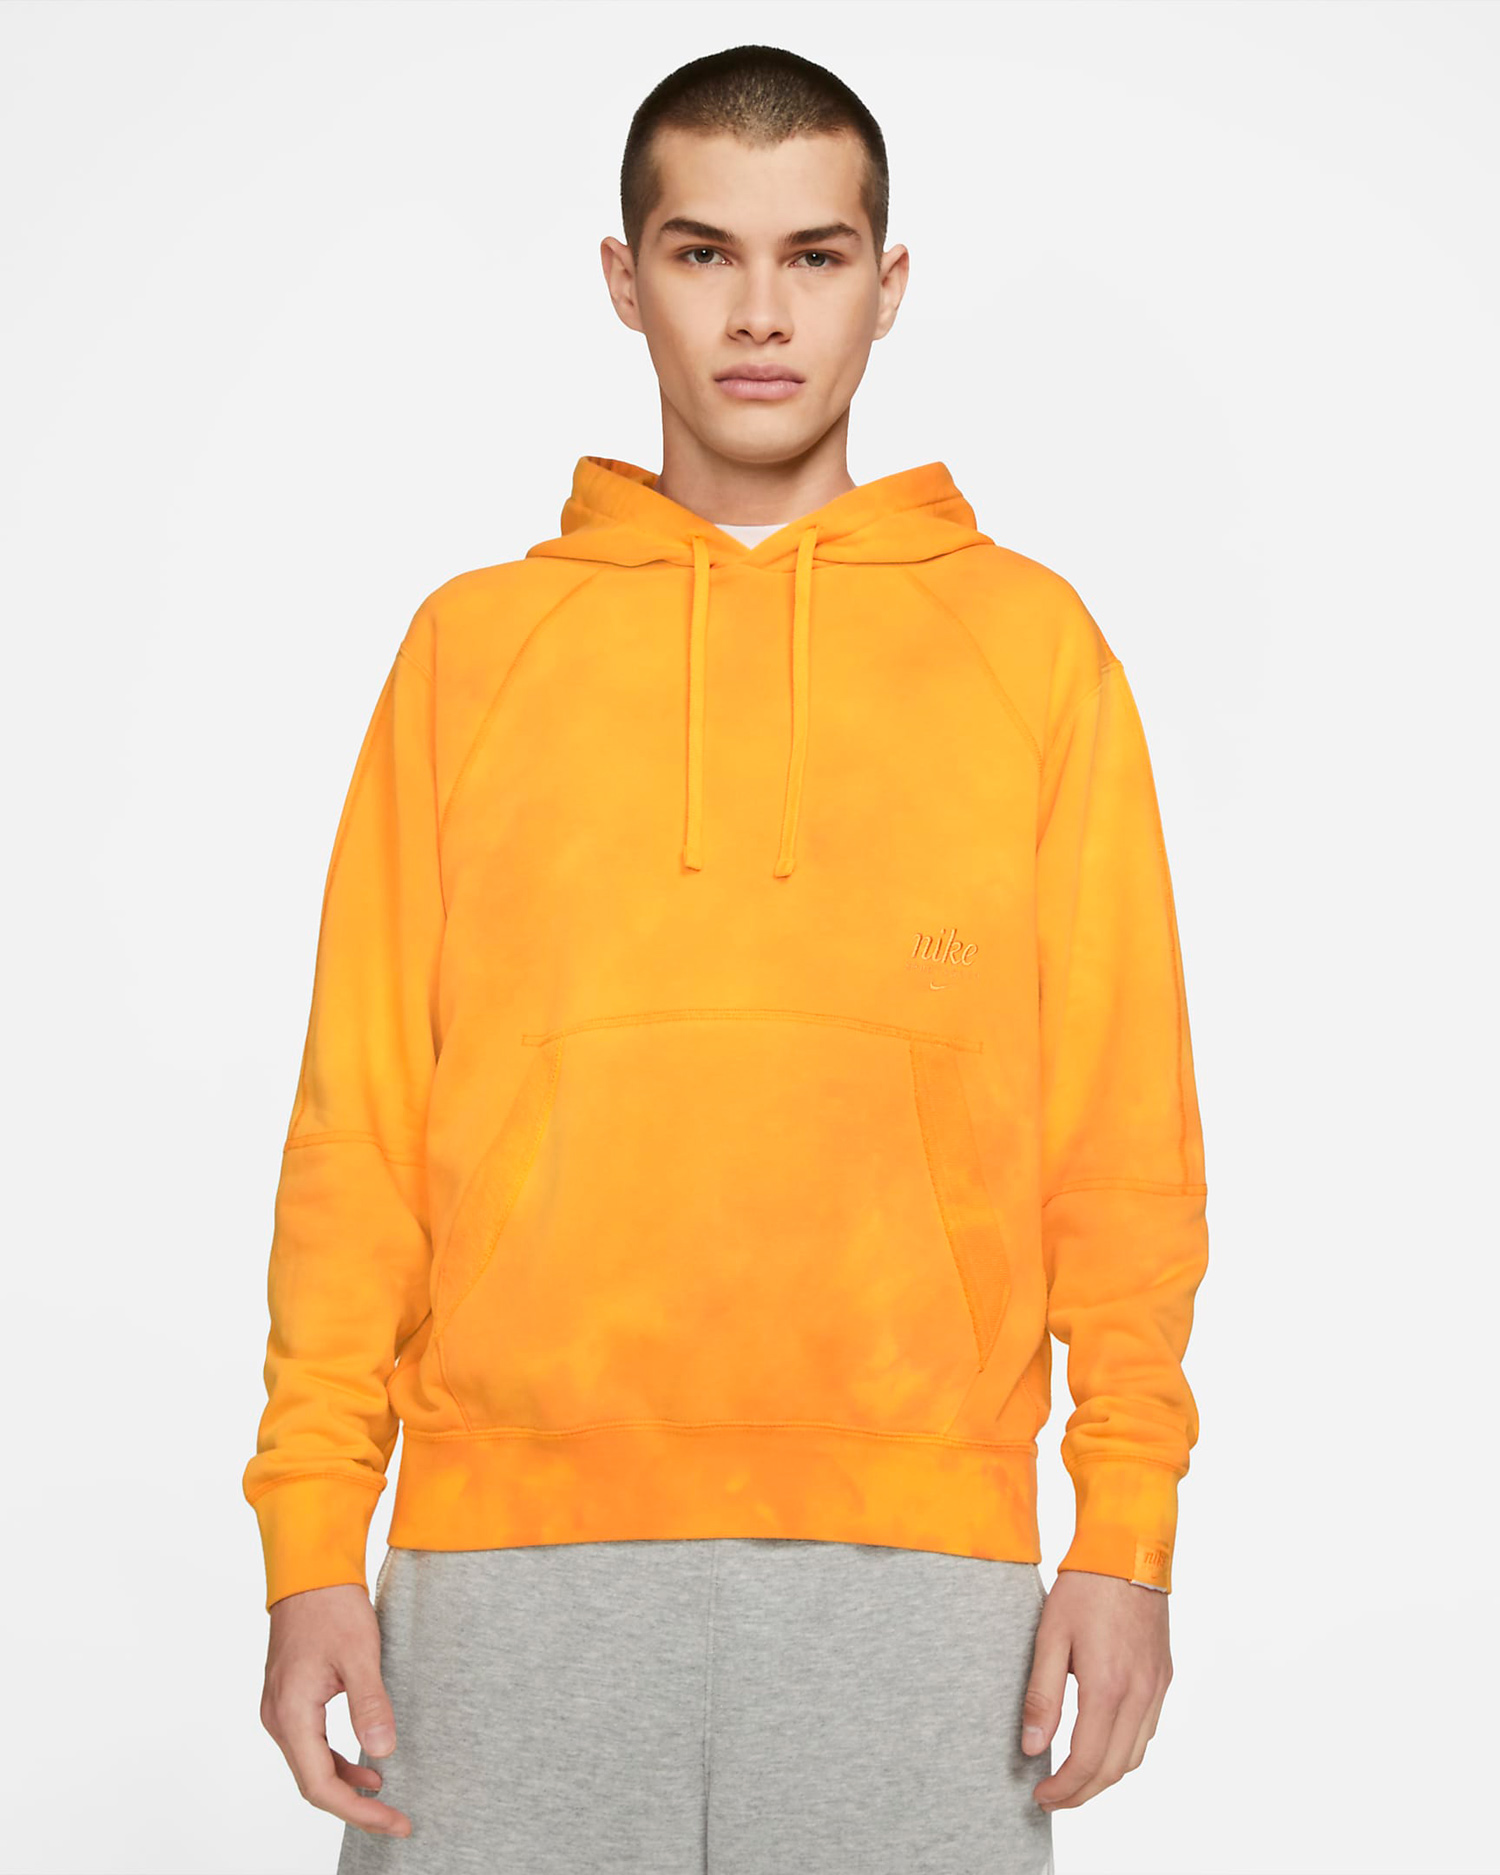 nike-university-gold-hoodie-1